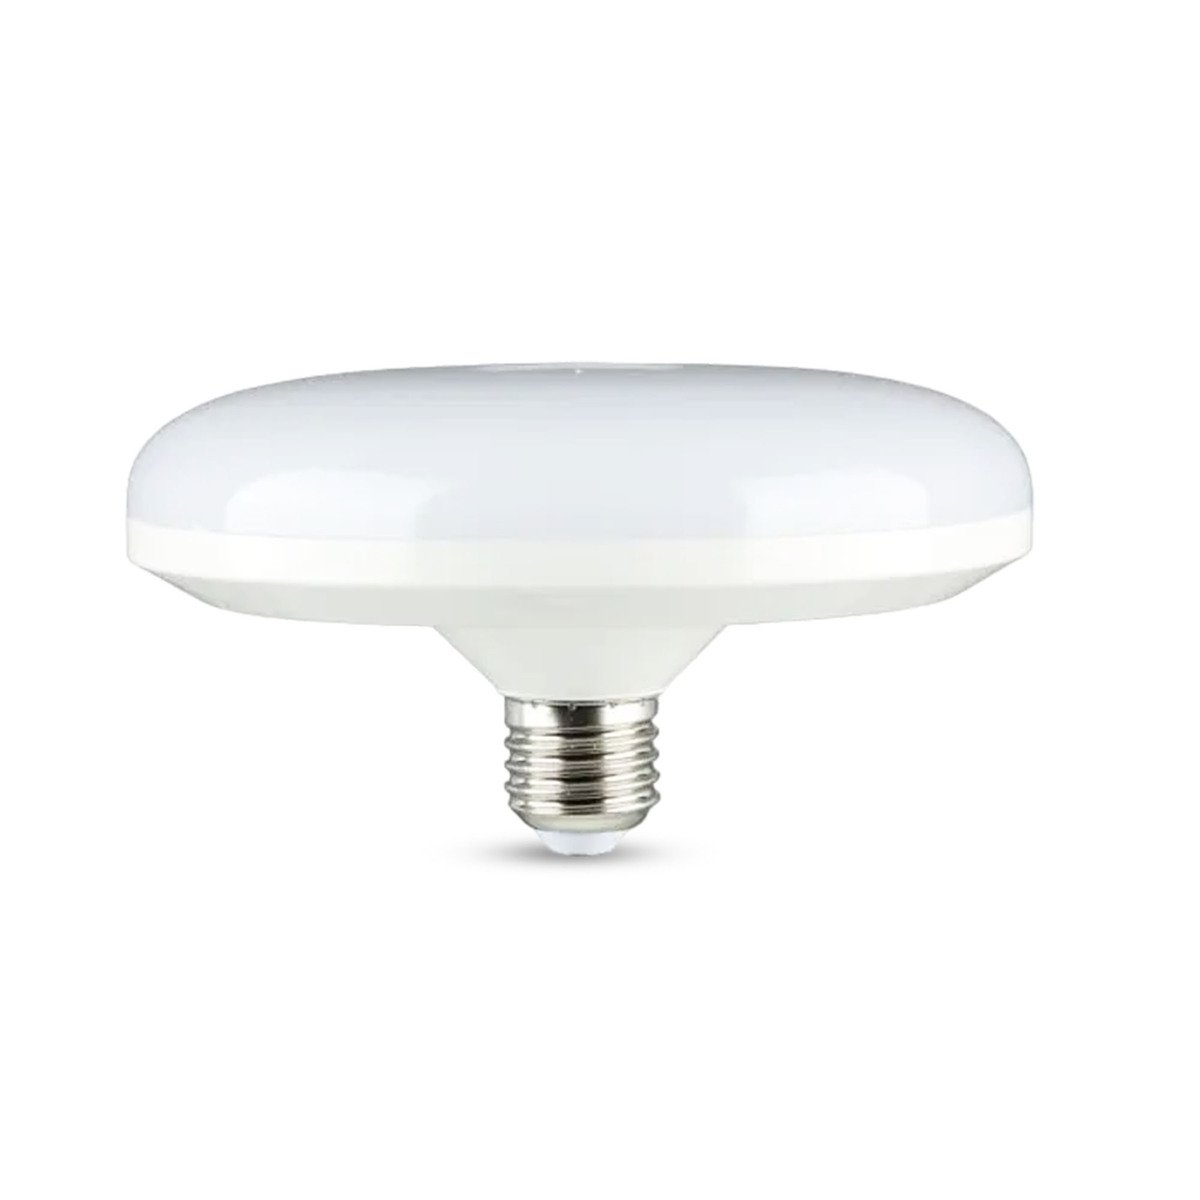 Osram LED Lamp 12W